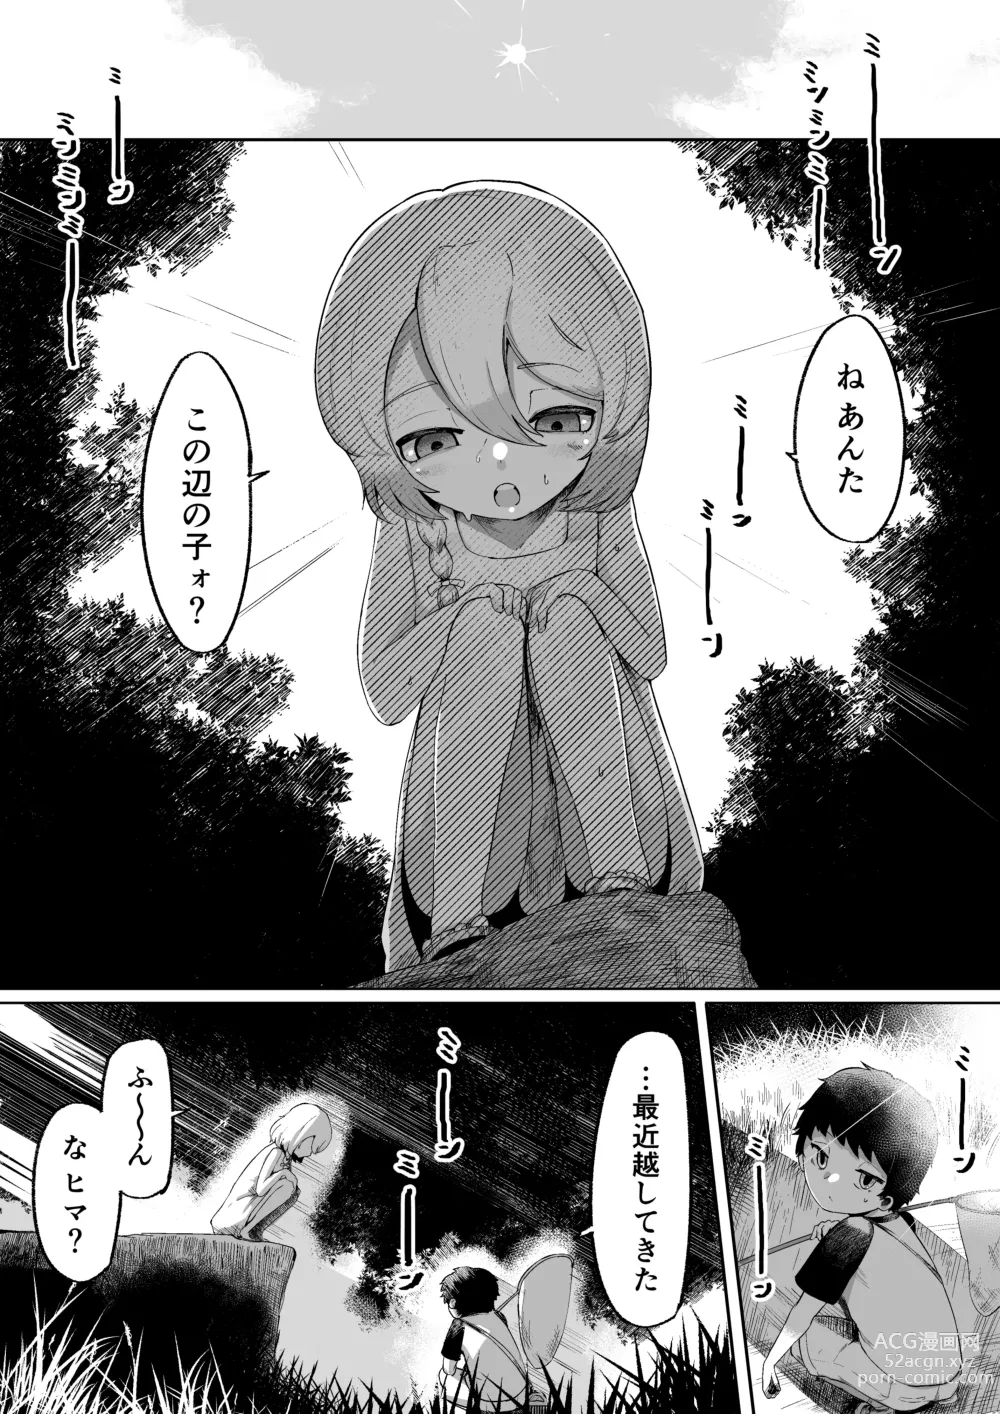 Page 3 of doujinshi Kamisama to Kodomo ga Dekiru made